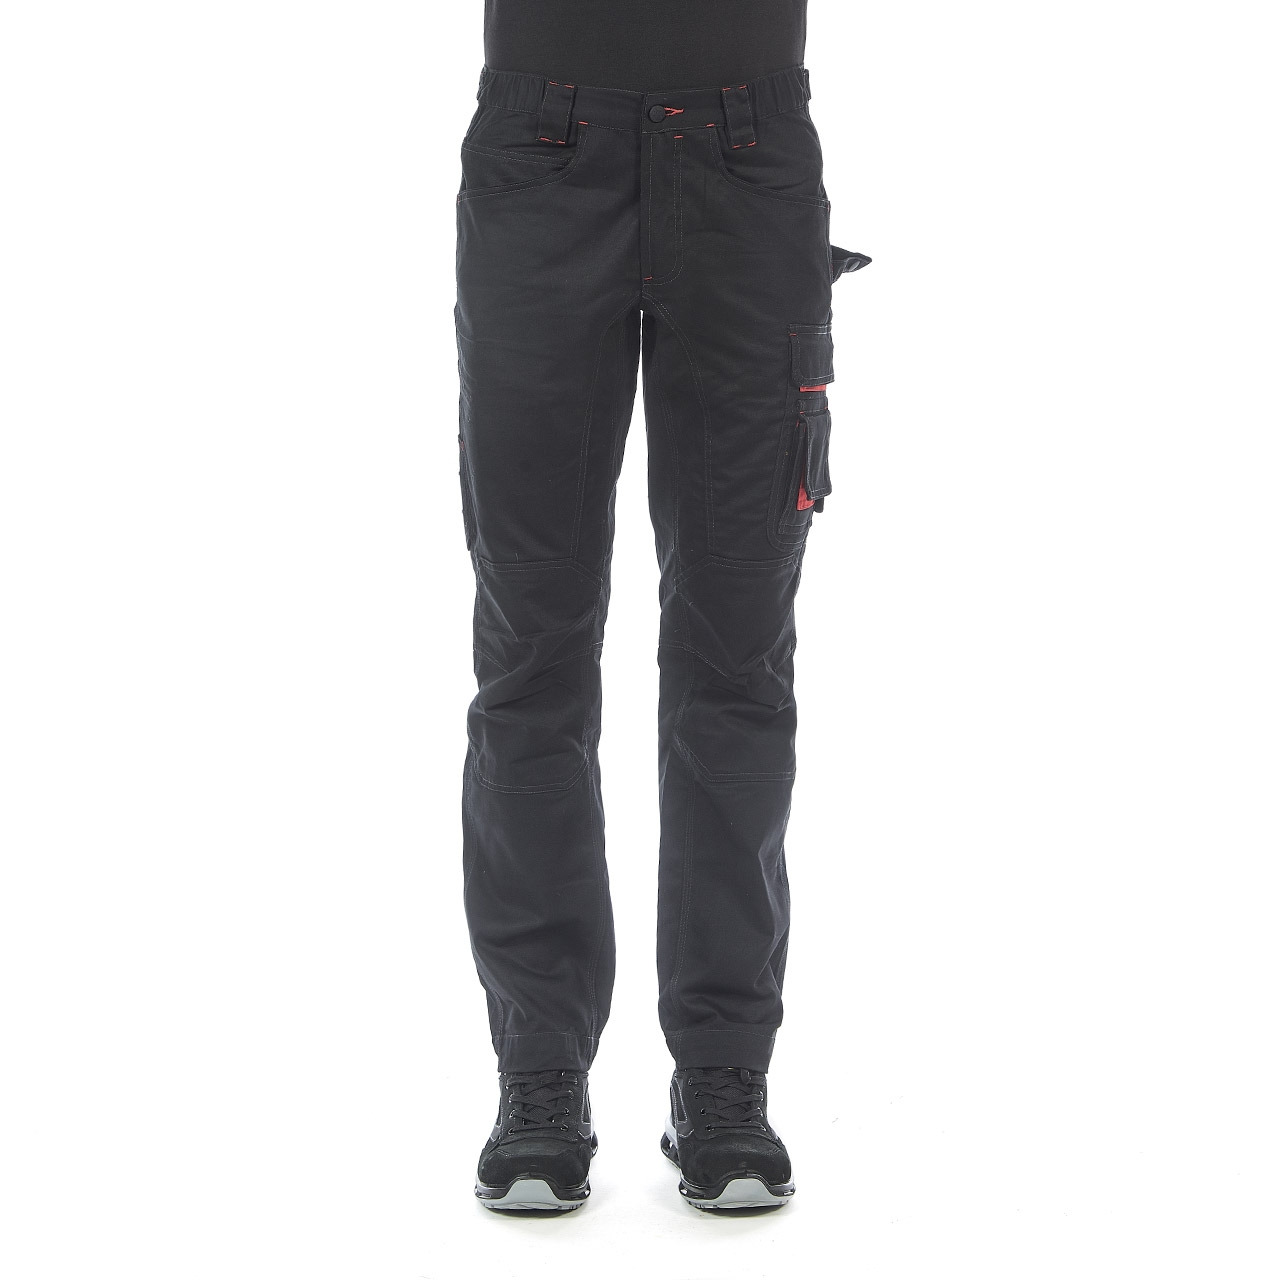 pantalone da lavoro upower modello smile colore black carbon indossato fronte